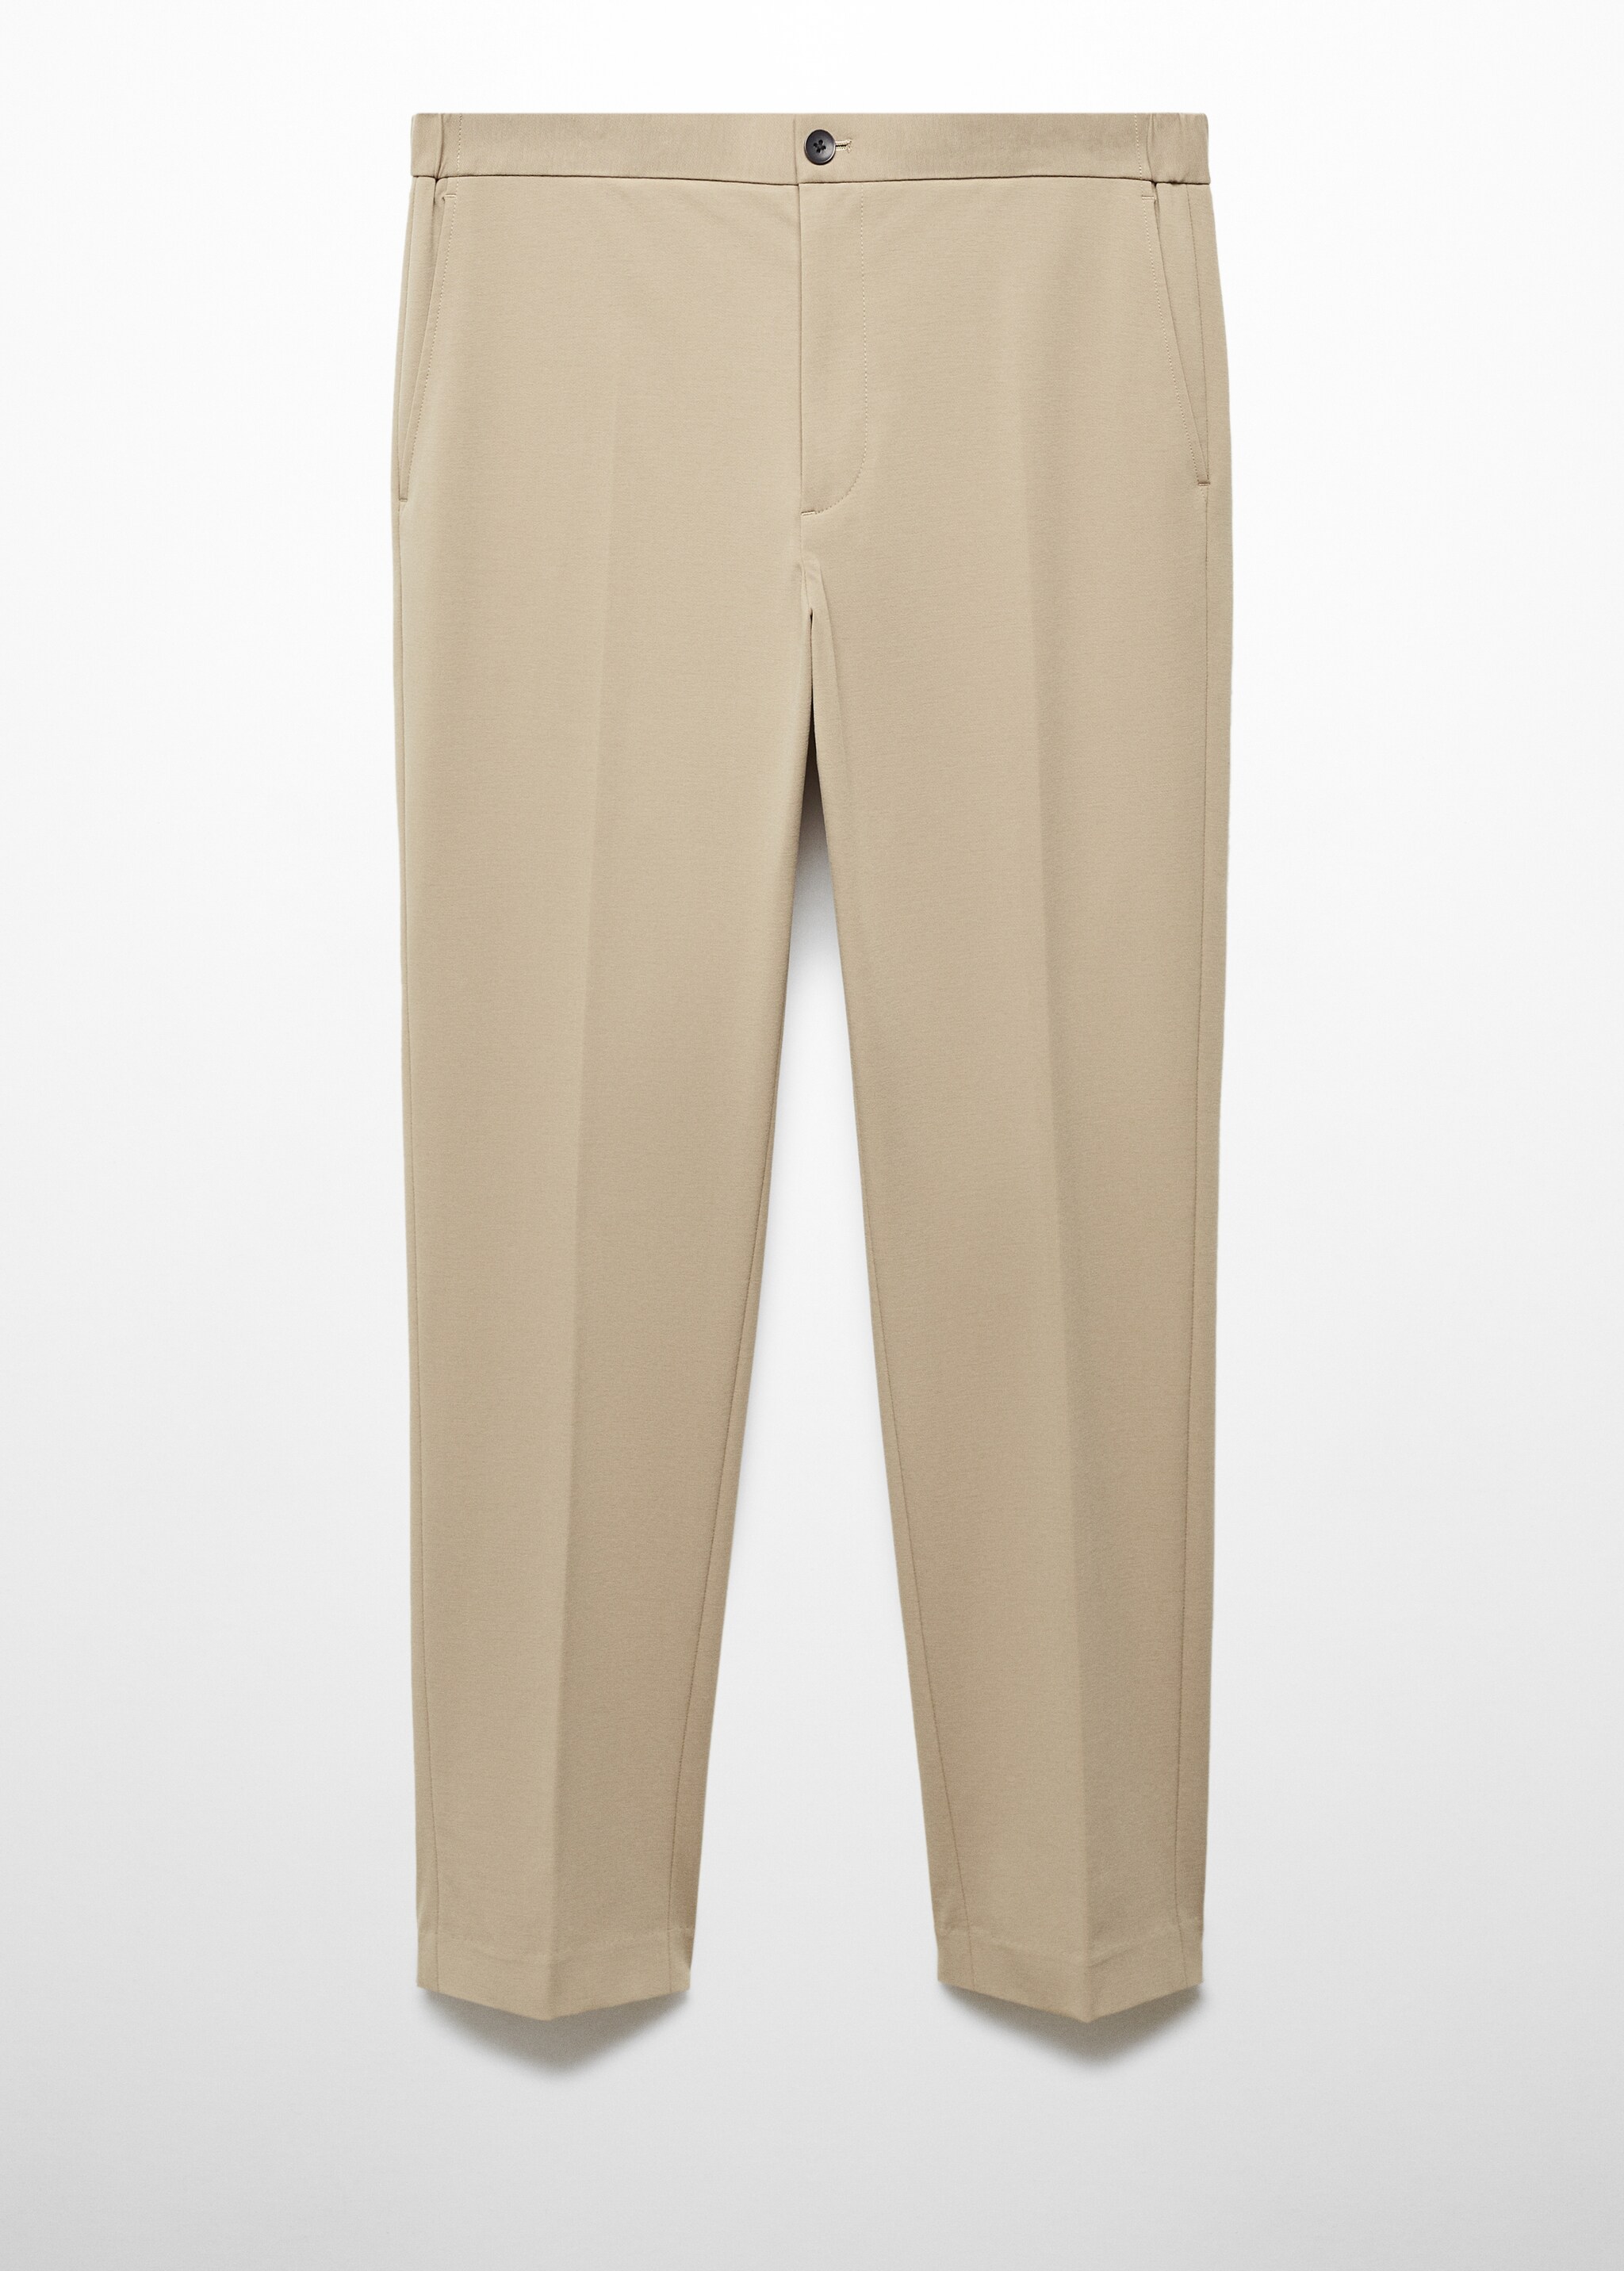 Pantalón traje slim fit algodón - Artículo sin modelo